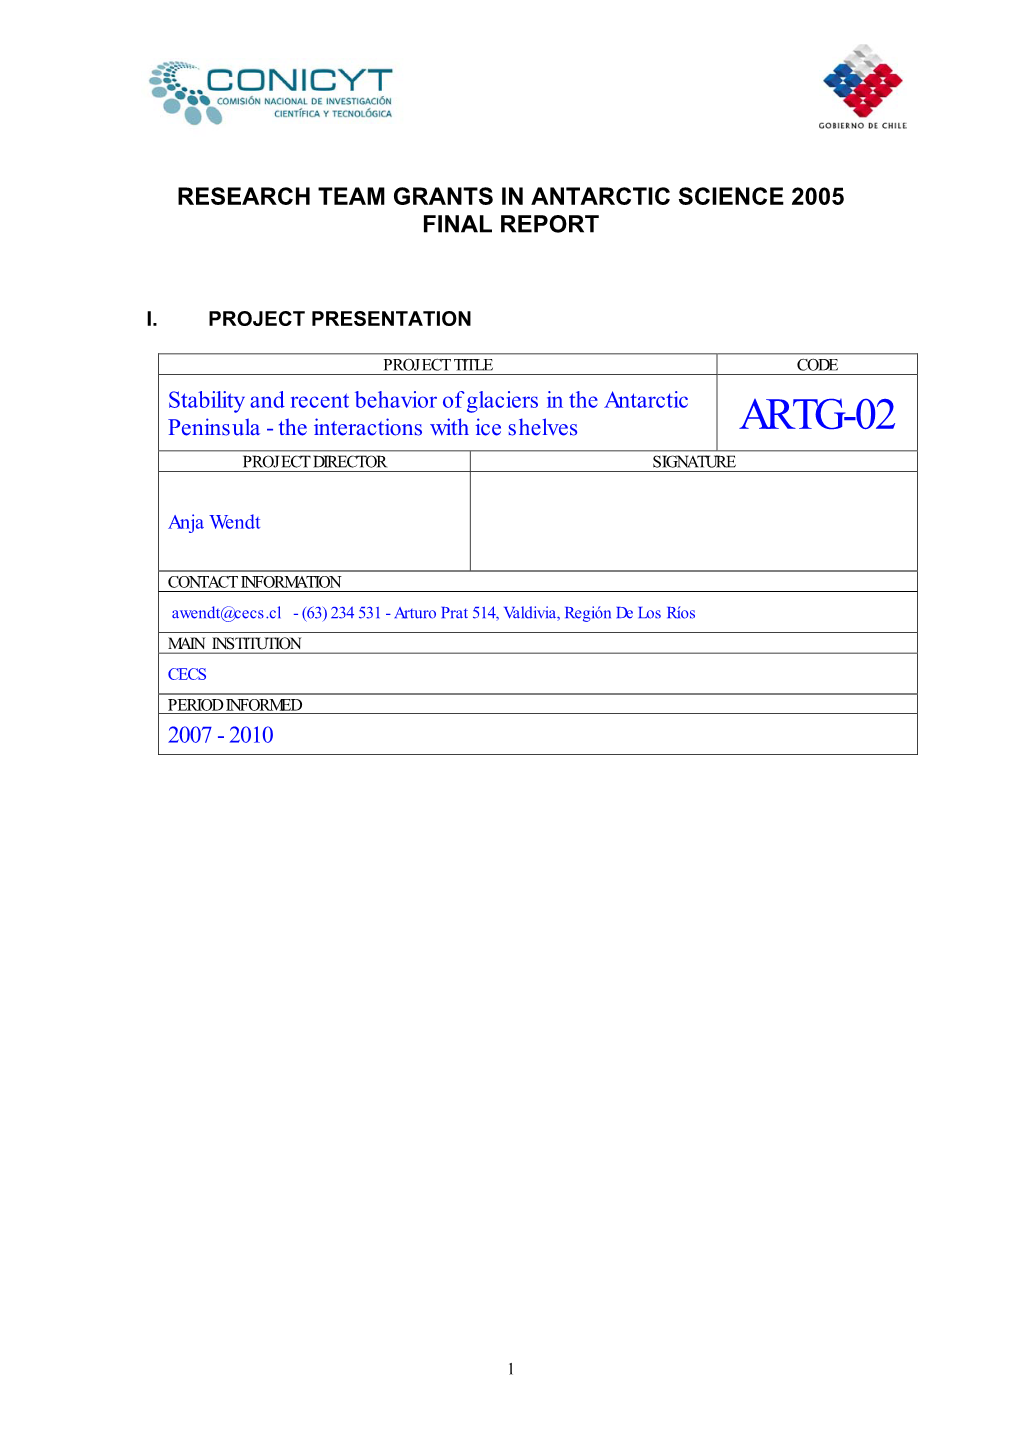 Artg-02 Project Director Signature